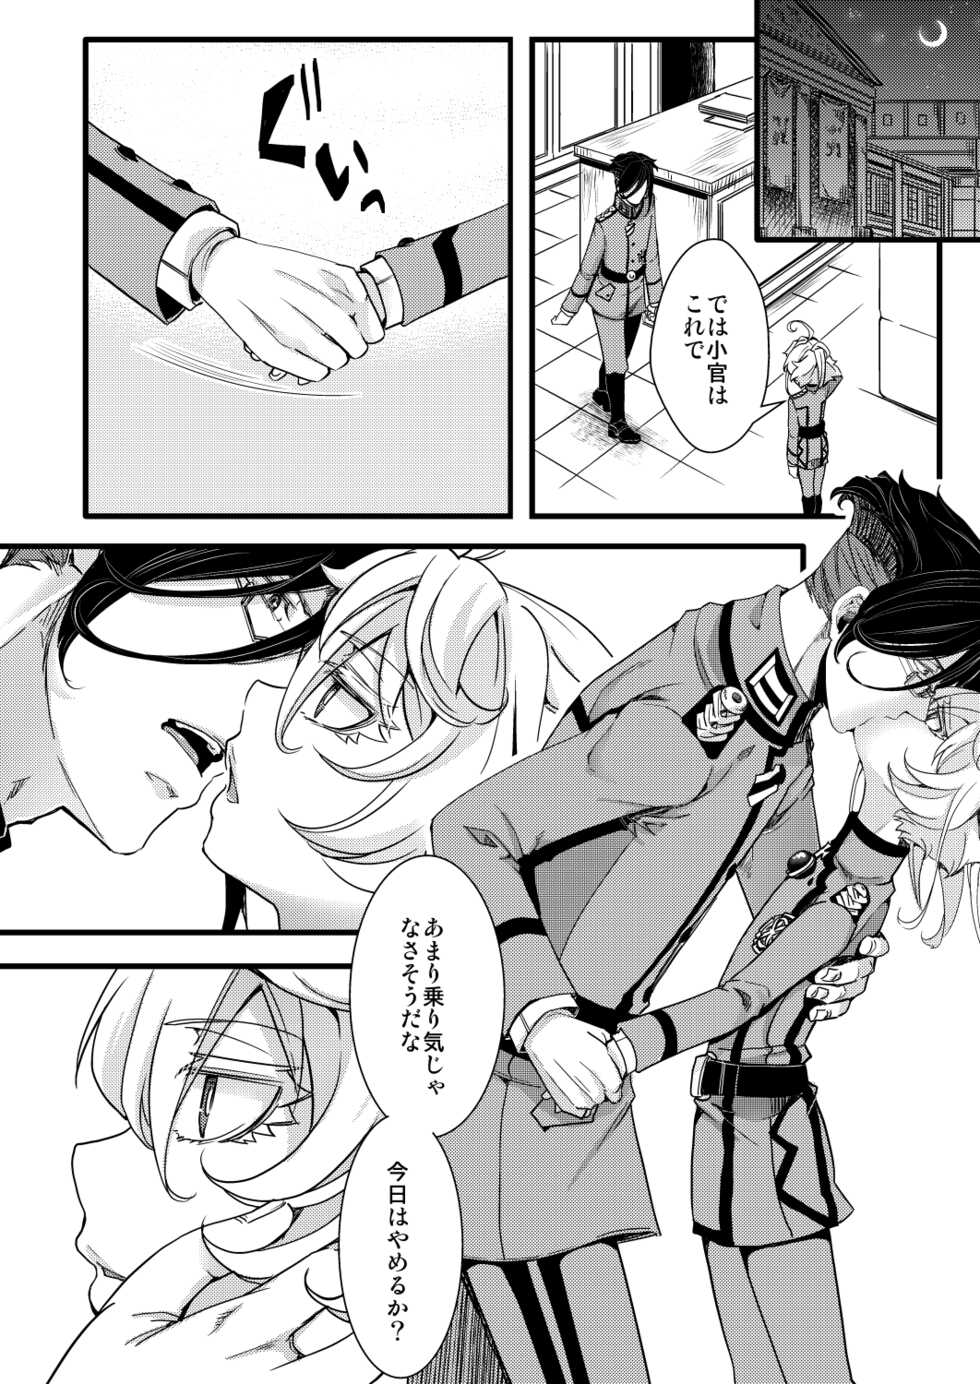 [hal] RT:SeFri kara Hajimaru Kenkax (Youjo Senki) - Page 6